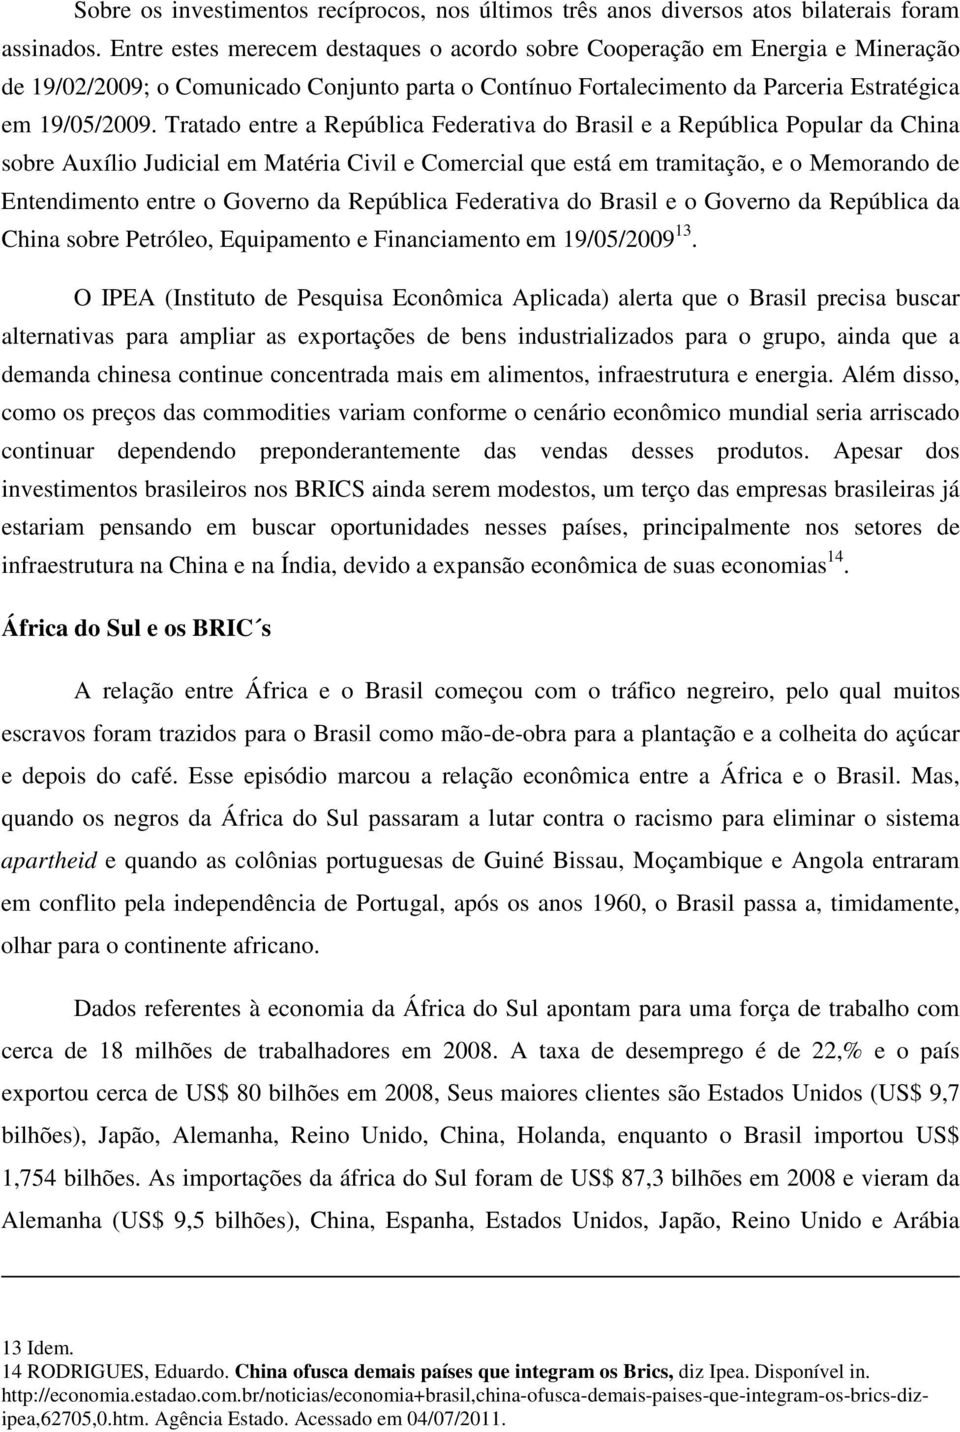 Tratado entre a República Federativa do Brasil e a República Popular da China sobre Auxílio Judicial em Matéria Civil e Comercial que está em tramitação, e o Memorando de Entendimento entre o Governo